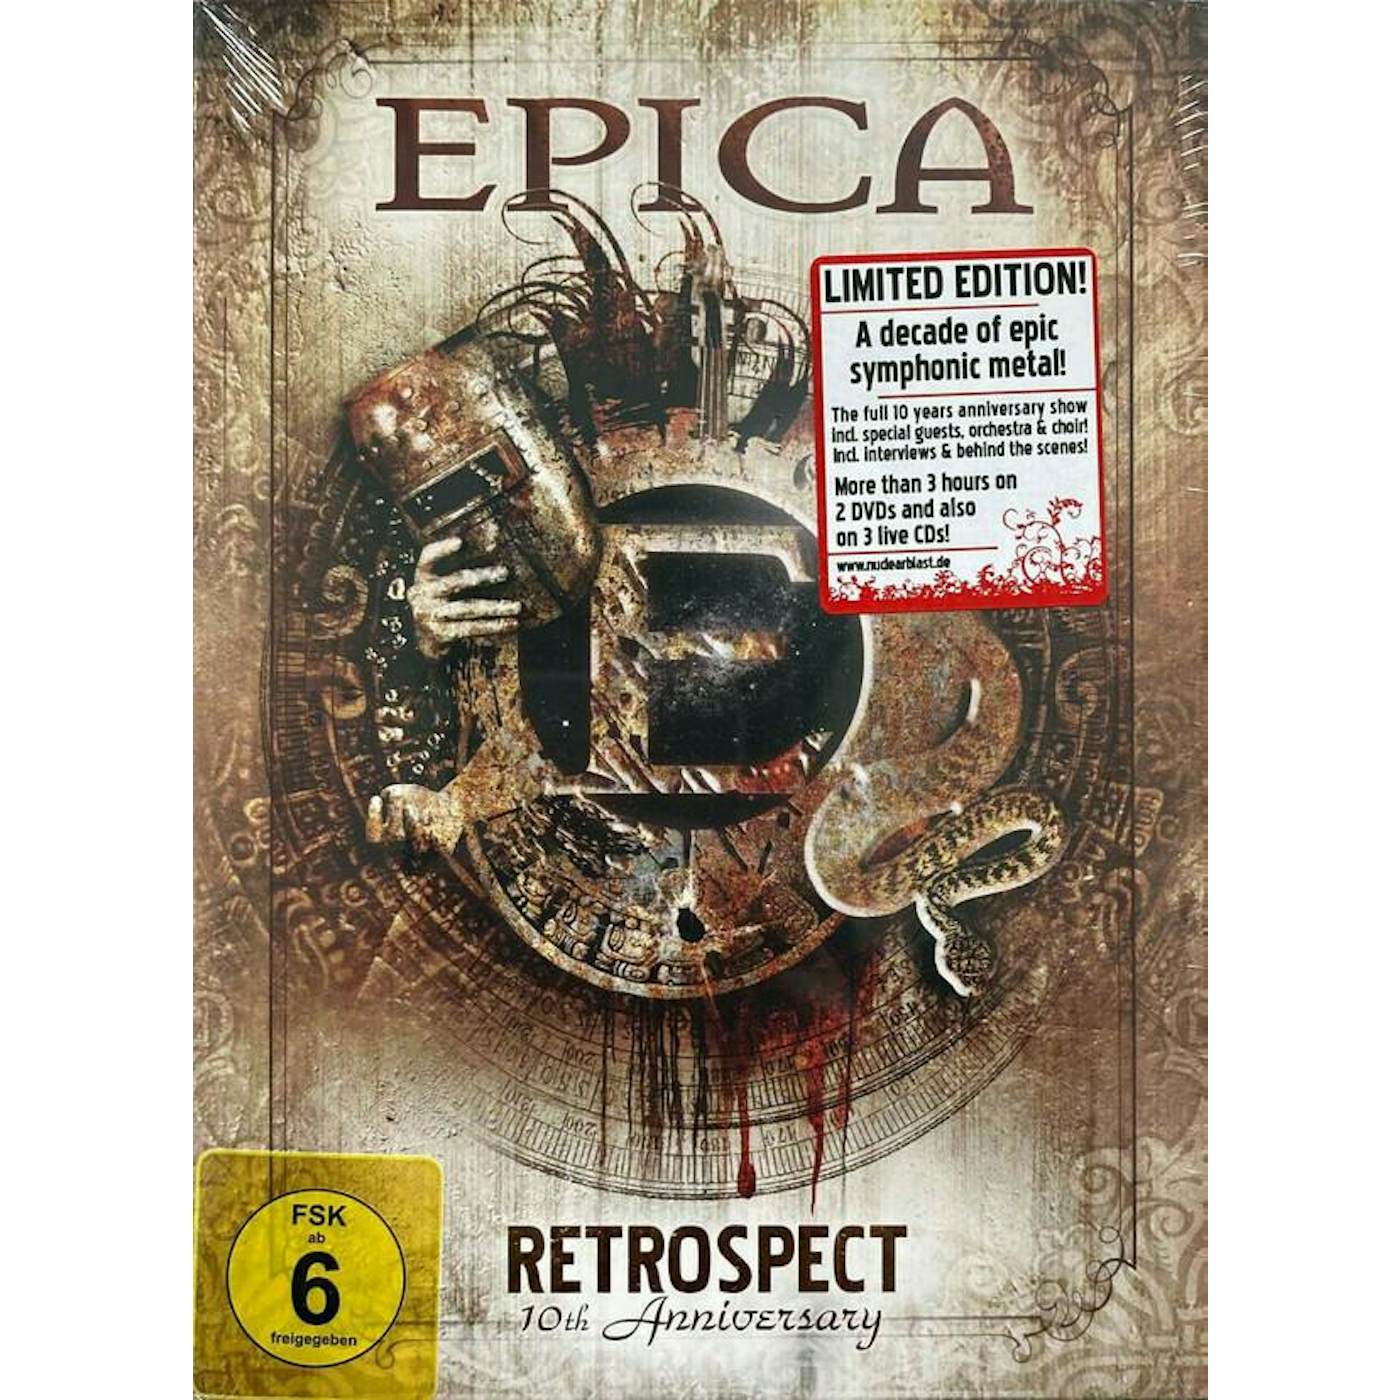 Epica RETROSPECT (10TH ANNIVERSARY) CD